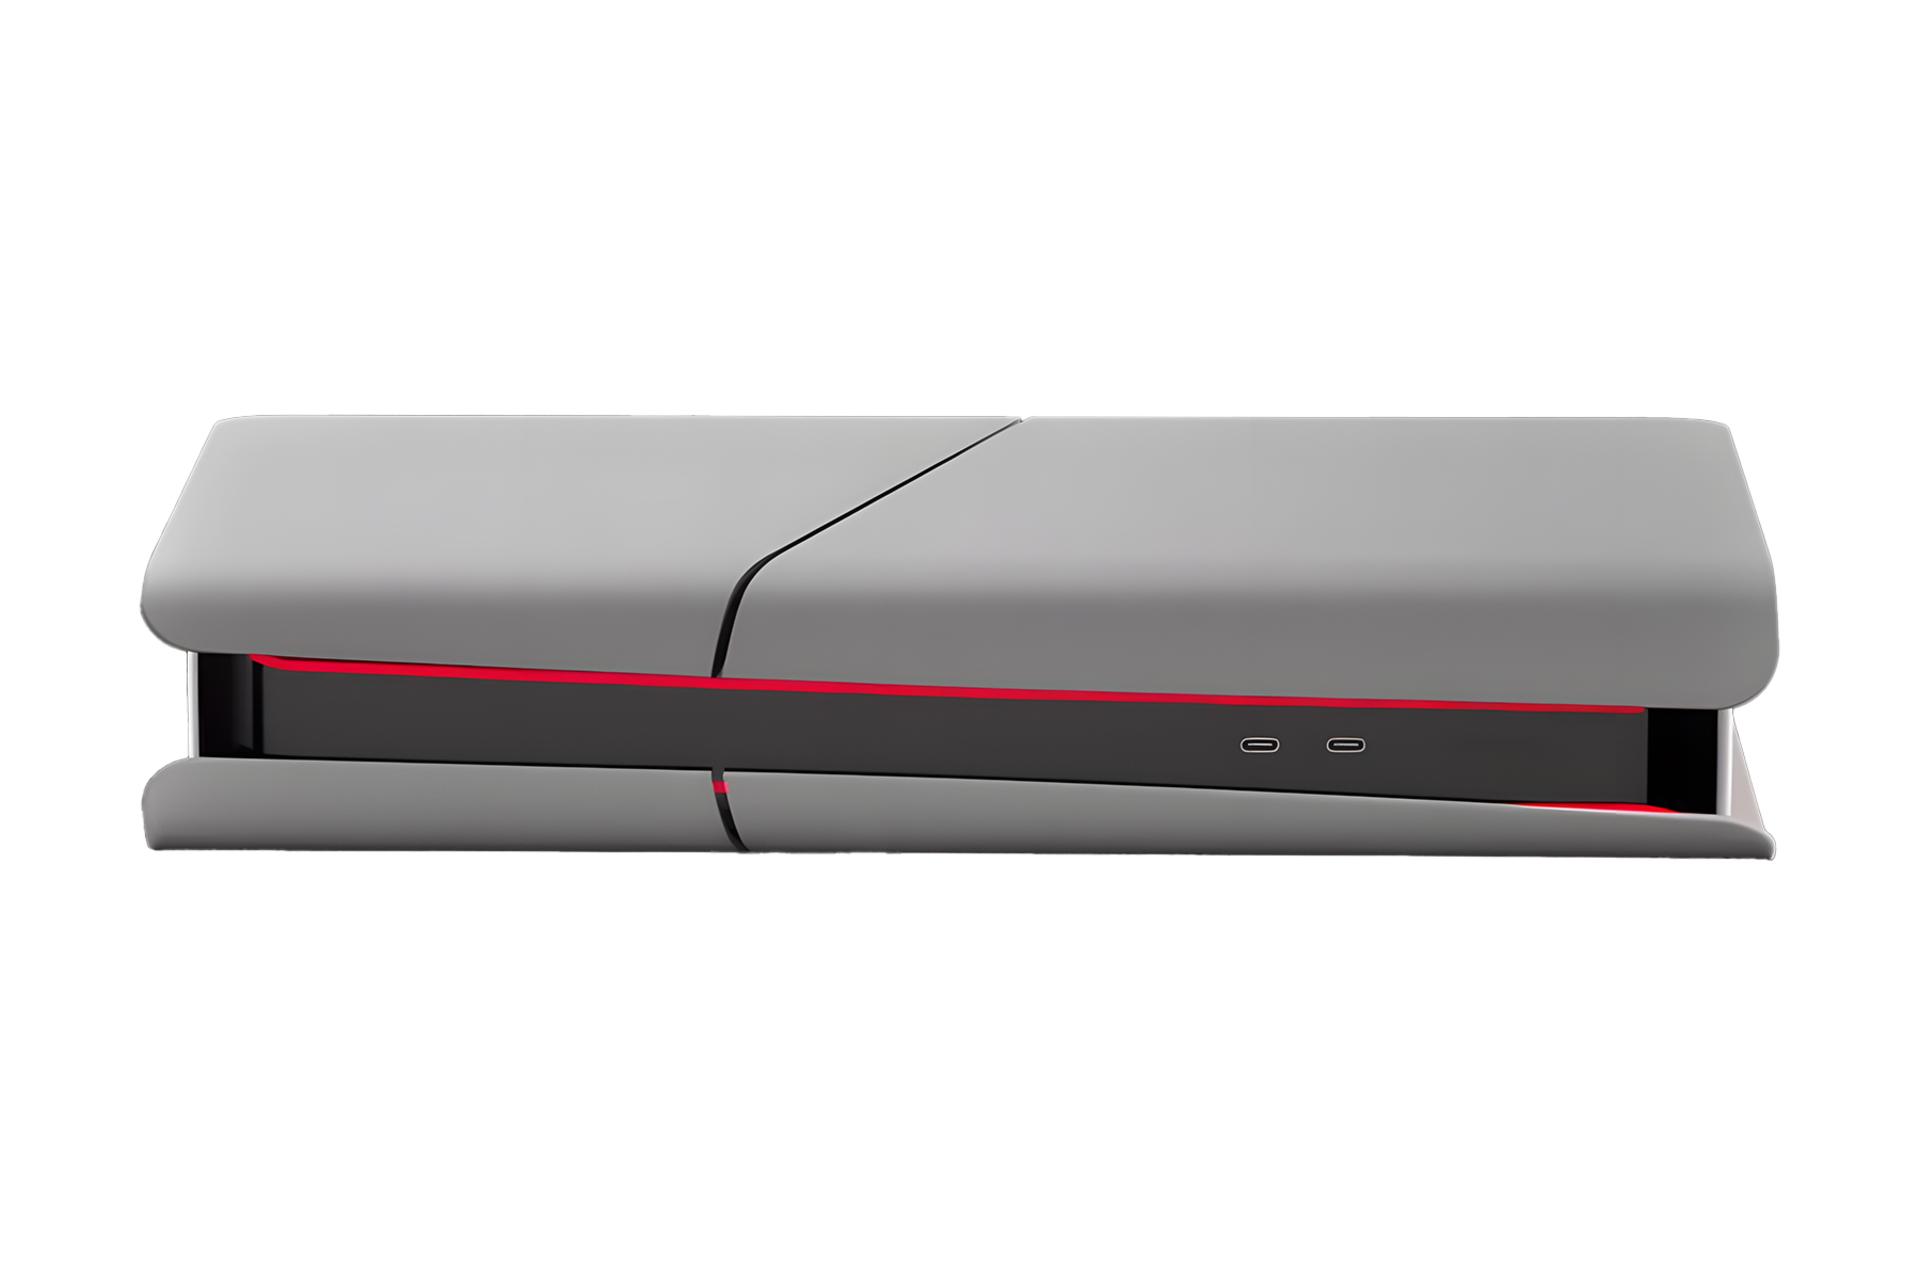 رندر شایعه کنسول بازی پلی استیشن 5 پرو سونی / Sony PlayStation 5 Pro با نمایش درگاه های پنل جلو در حالت افقی رنگ خاکستری قرمز